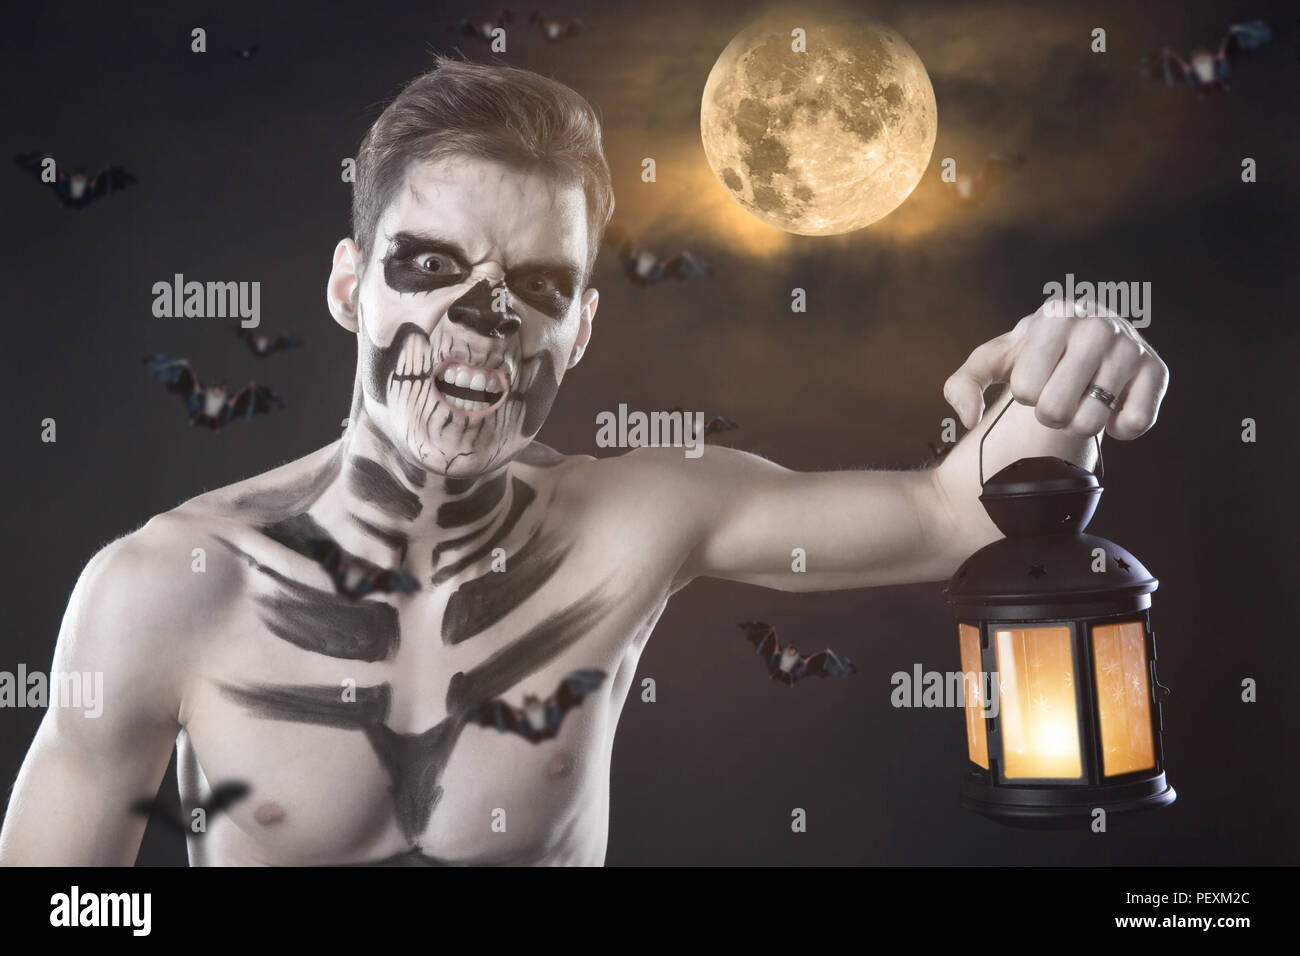 Dia de los Muerto Kostüm - Tag der Toten ist ein mexikanischer Urlaub. Hier  ist ein Mann, mit dem Schädel Gesicht vor dem Hintergrund der Mond  Stockfotografie - Alamy